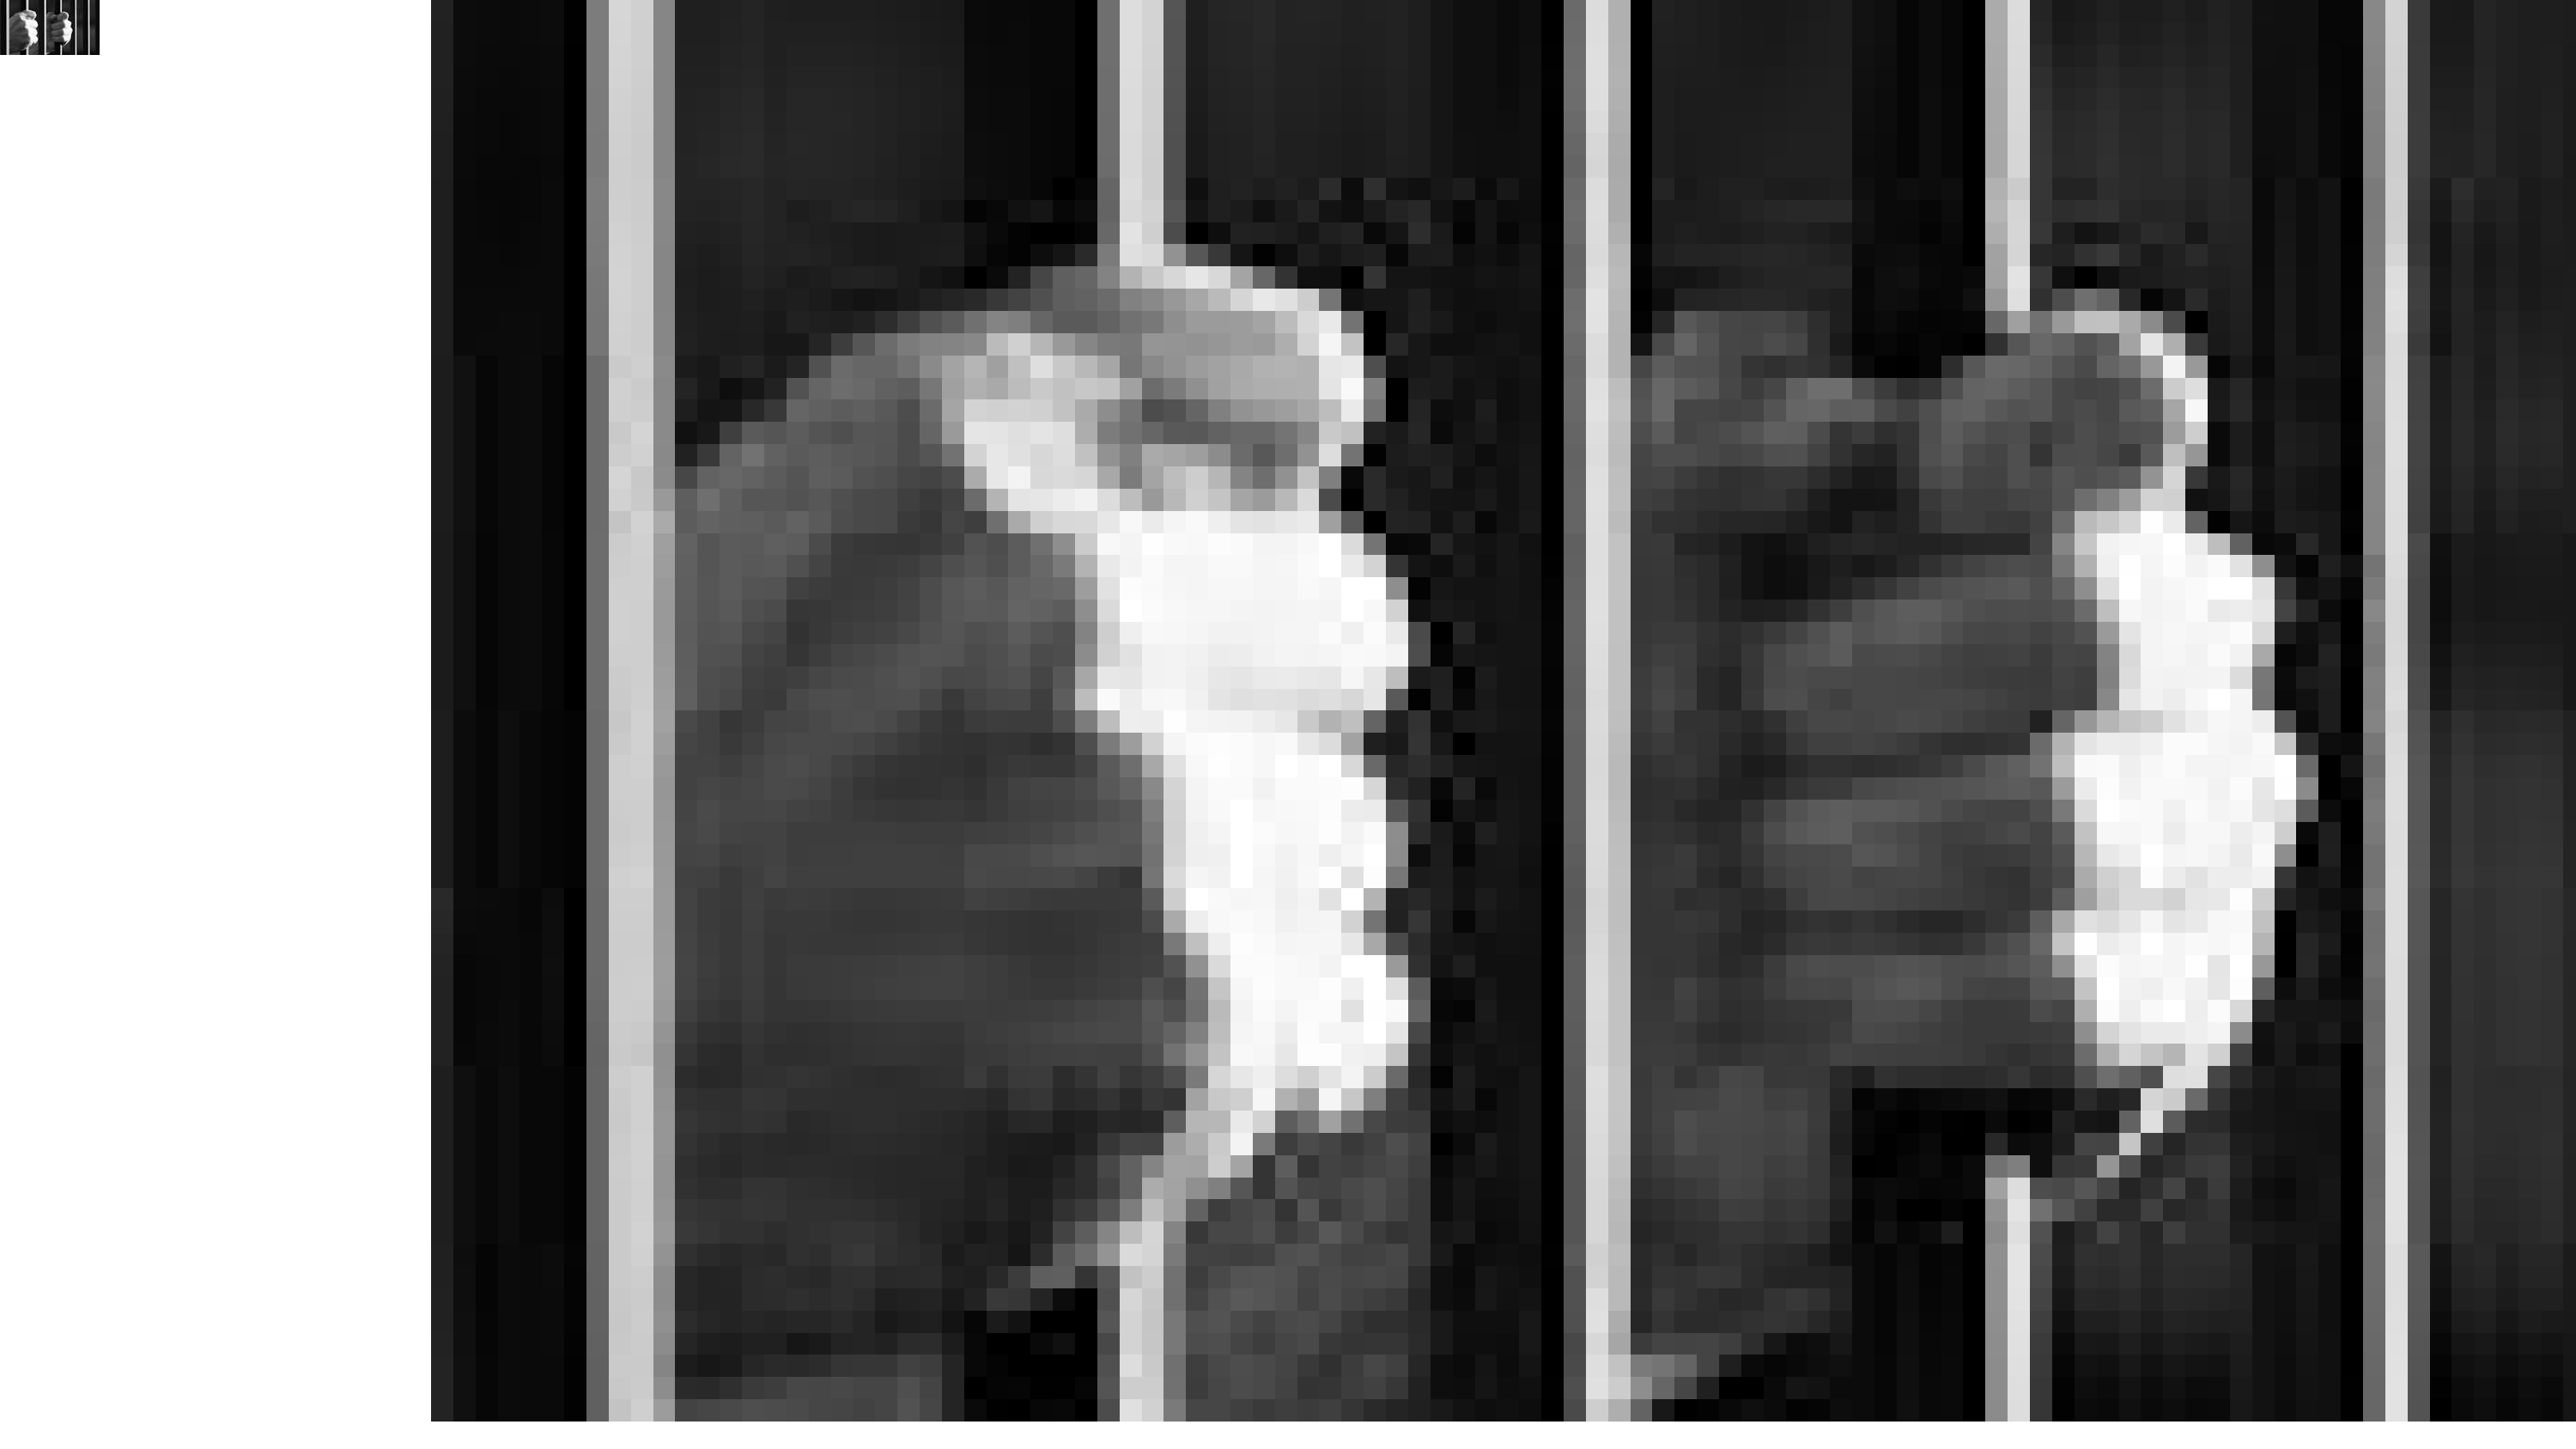 संदिग्ध ‘लव जिहाद’ मामले में व्यक्ति गिरफ्तार